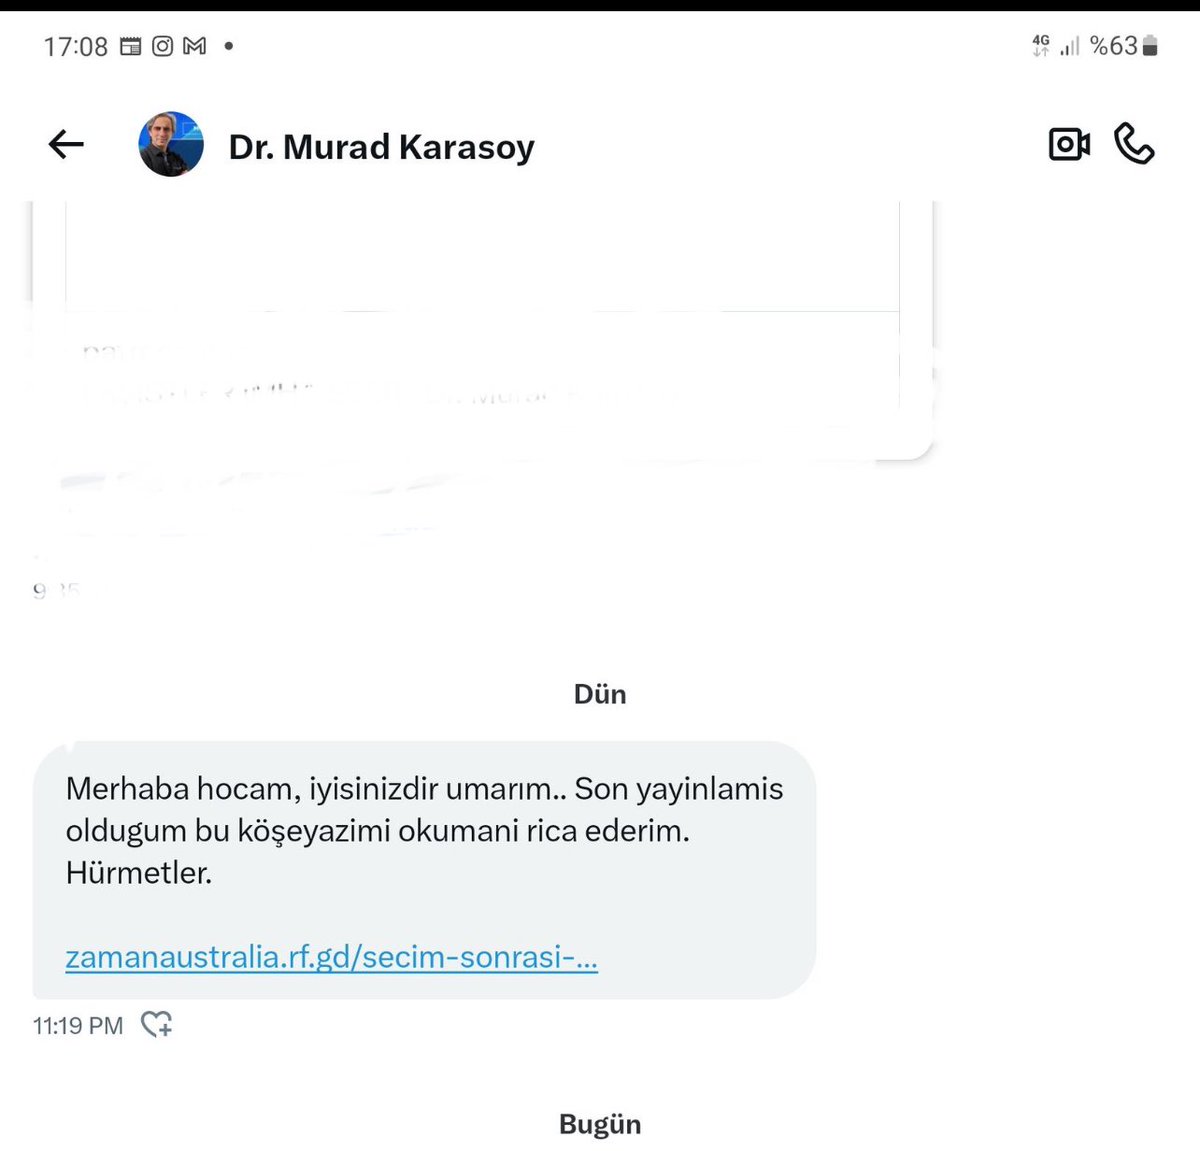 . @KarasoyMurad hesabıyla takipleştiğimiz kişilere aşağıdaki DM mesajını göndererek hesaplarını hacklemeye çalışıyorlar.
@KarasoyMurad ve @MuradKarasoy hesaplarını bloklarınız lütfen. Şikayet ediniz. İhmal etmeyin.